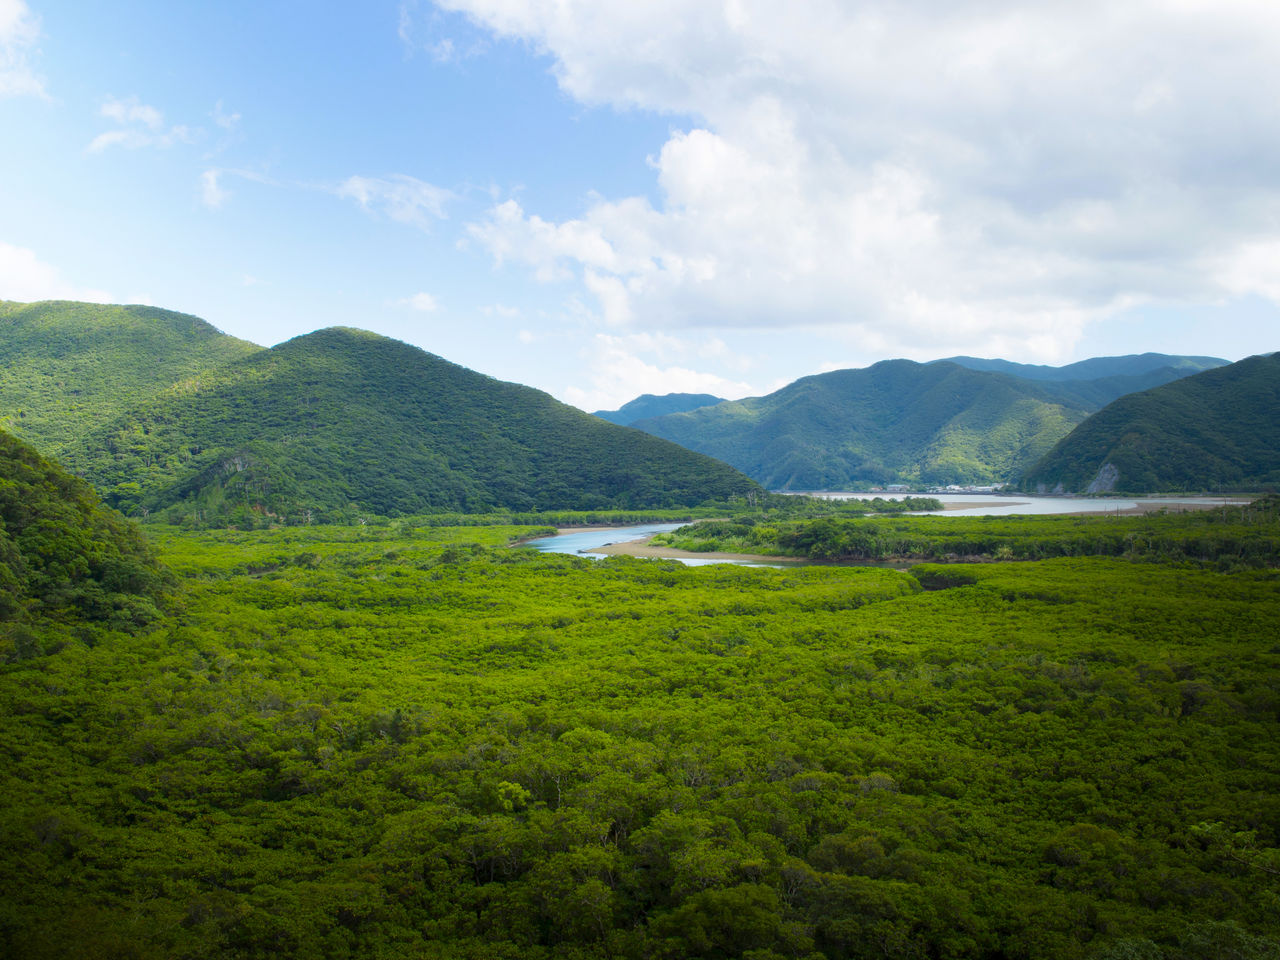 El bosque de manglar se extiende en el estuario donde confluyen los ríos Sumiyō y Yakugachi.